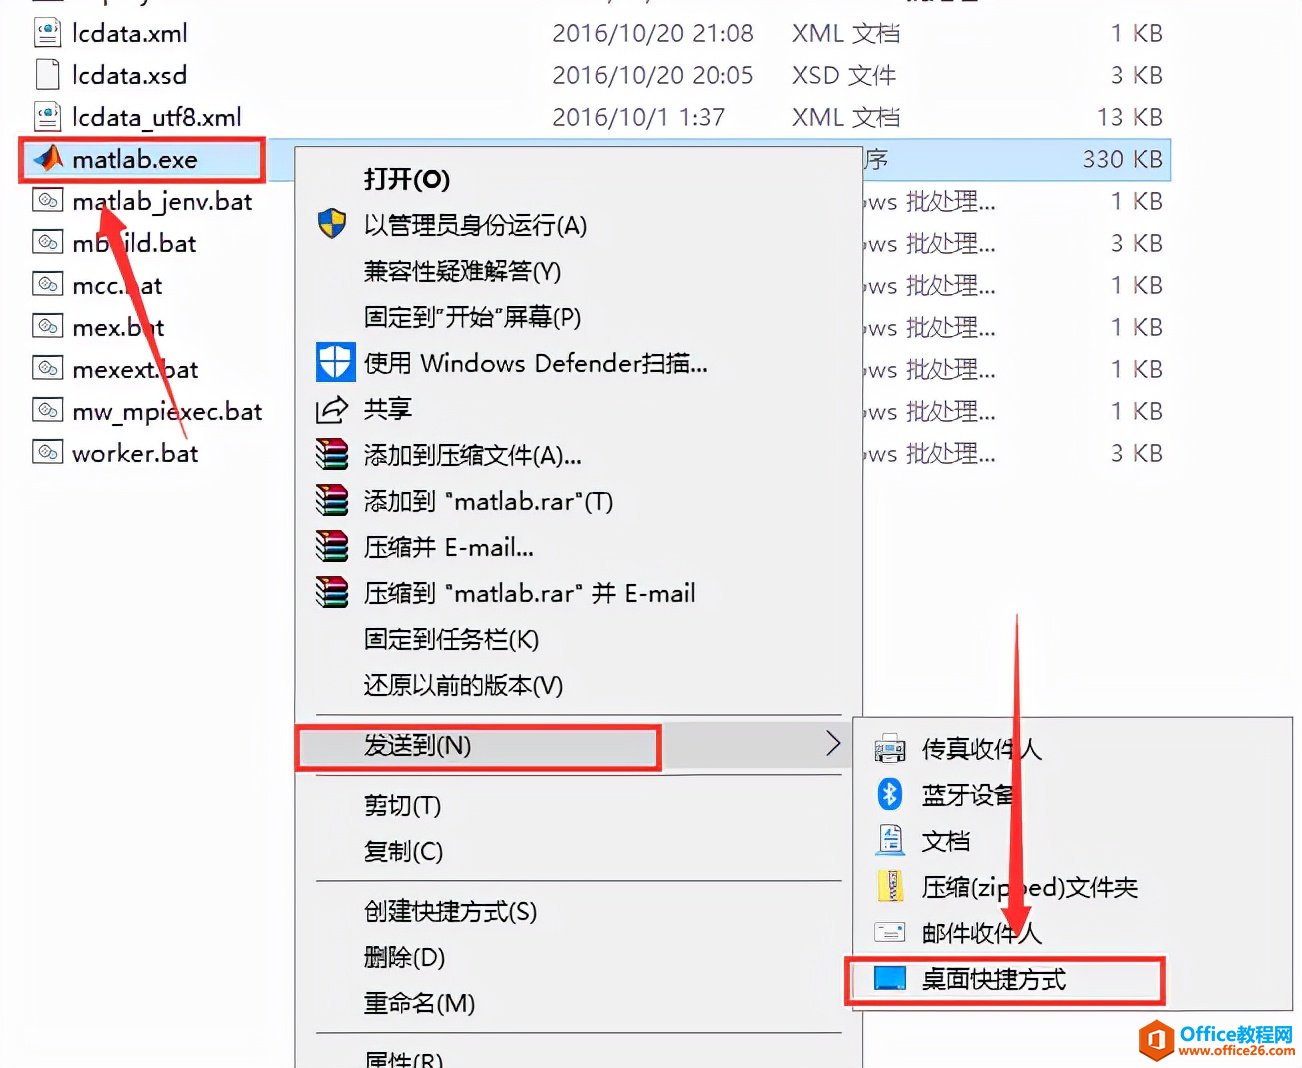 MATLAB 2021a中文版软件安装包下载地址及安装教程